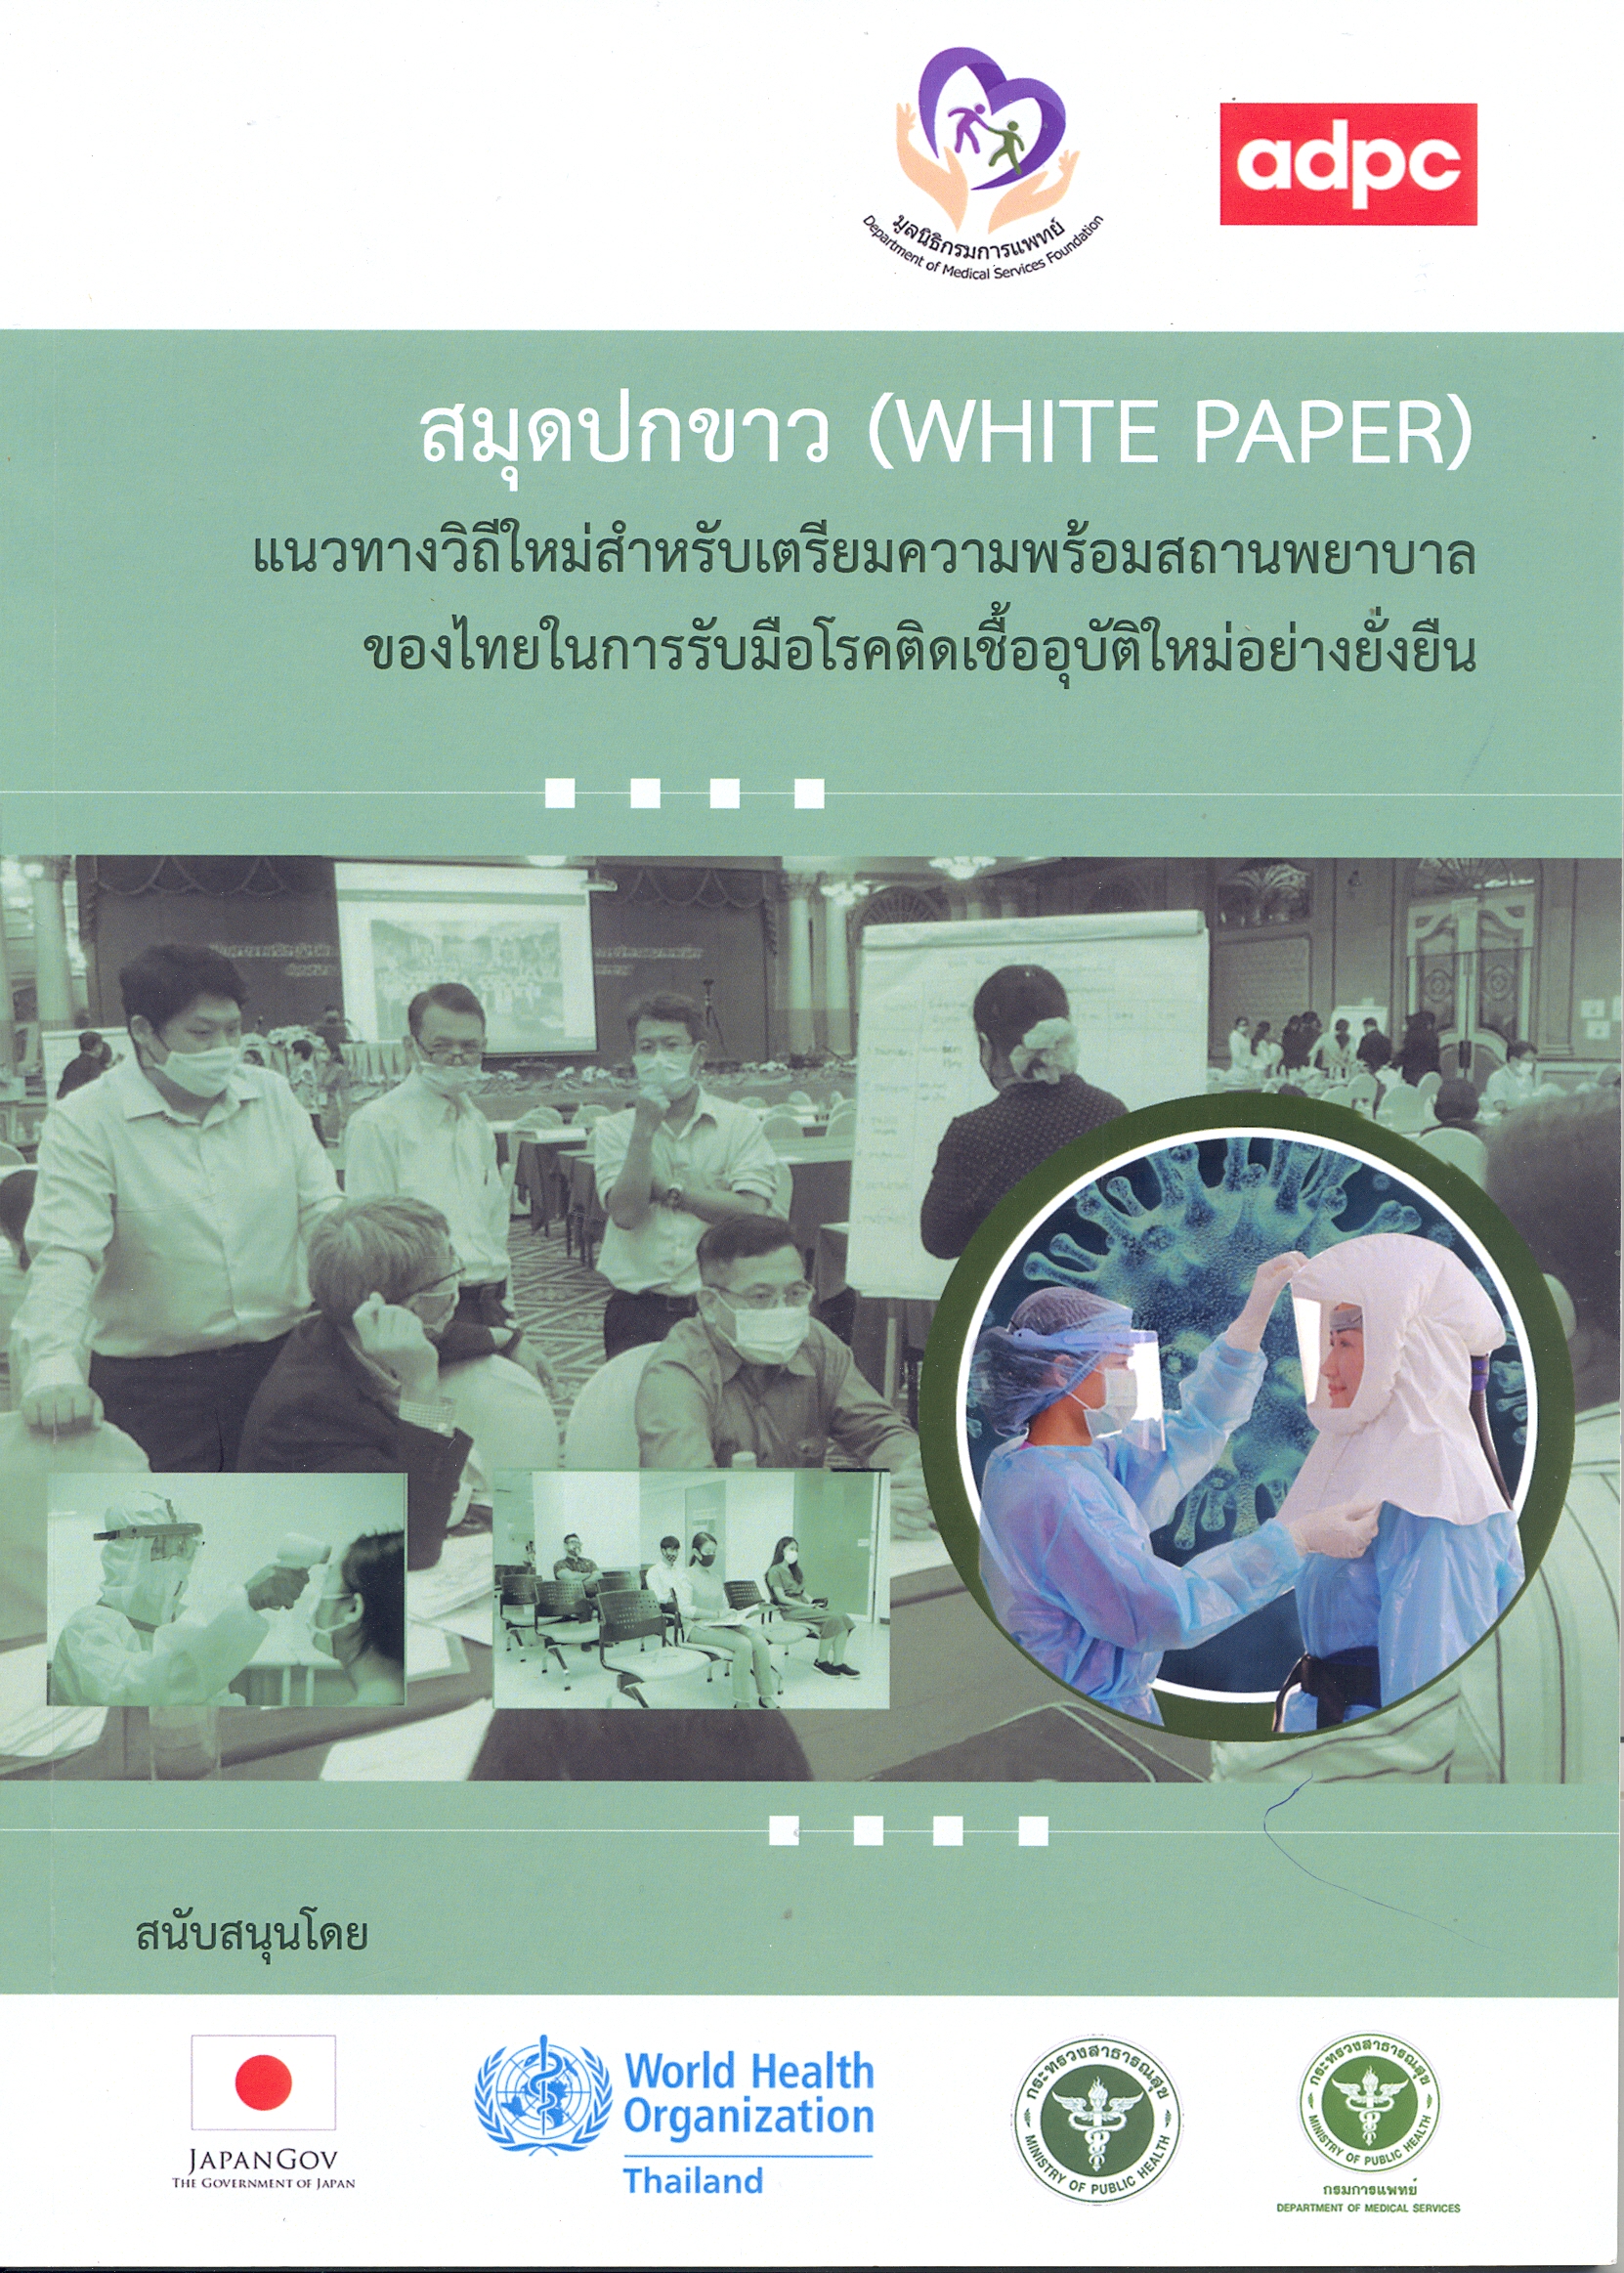 สมุดปกขาว แนวทางวิถีใหม่สำหรับเตรียมความพร้อมสถานพยาบาลของไทยในการรับมือโรคติดเชื้ออุบัติใหม่อย่างยั่งยืน.